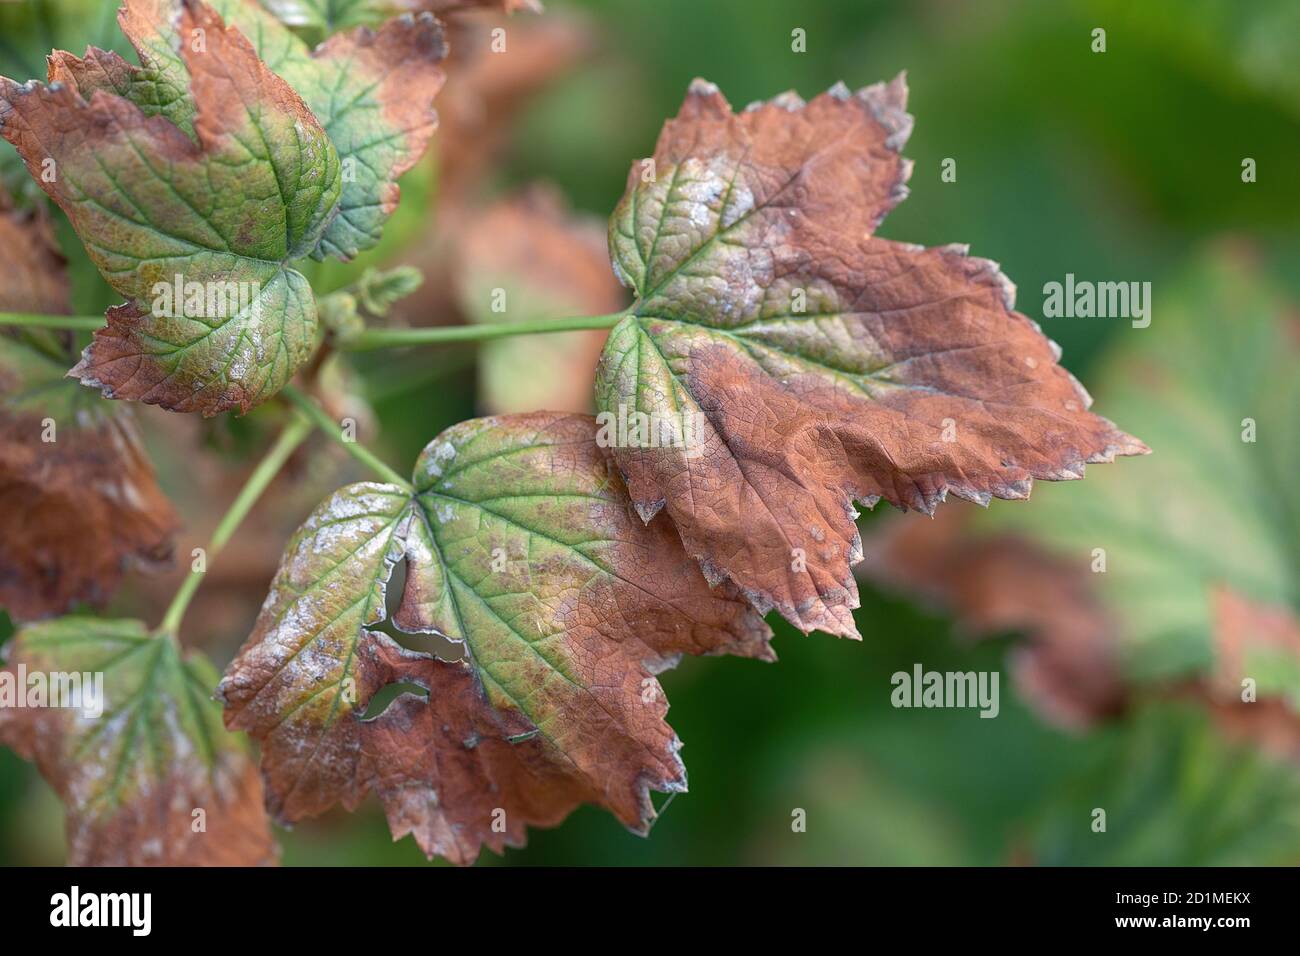 blackcurrant leaf damage as symptoms of fusarium wilt. Stock Photo